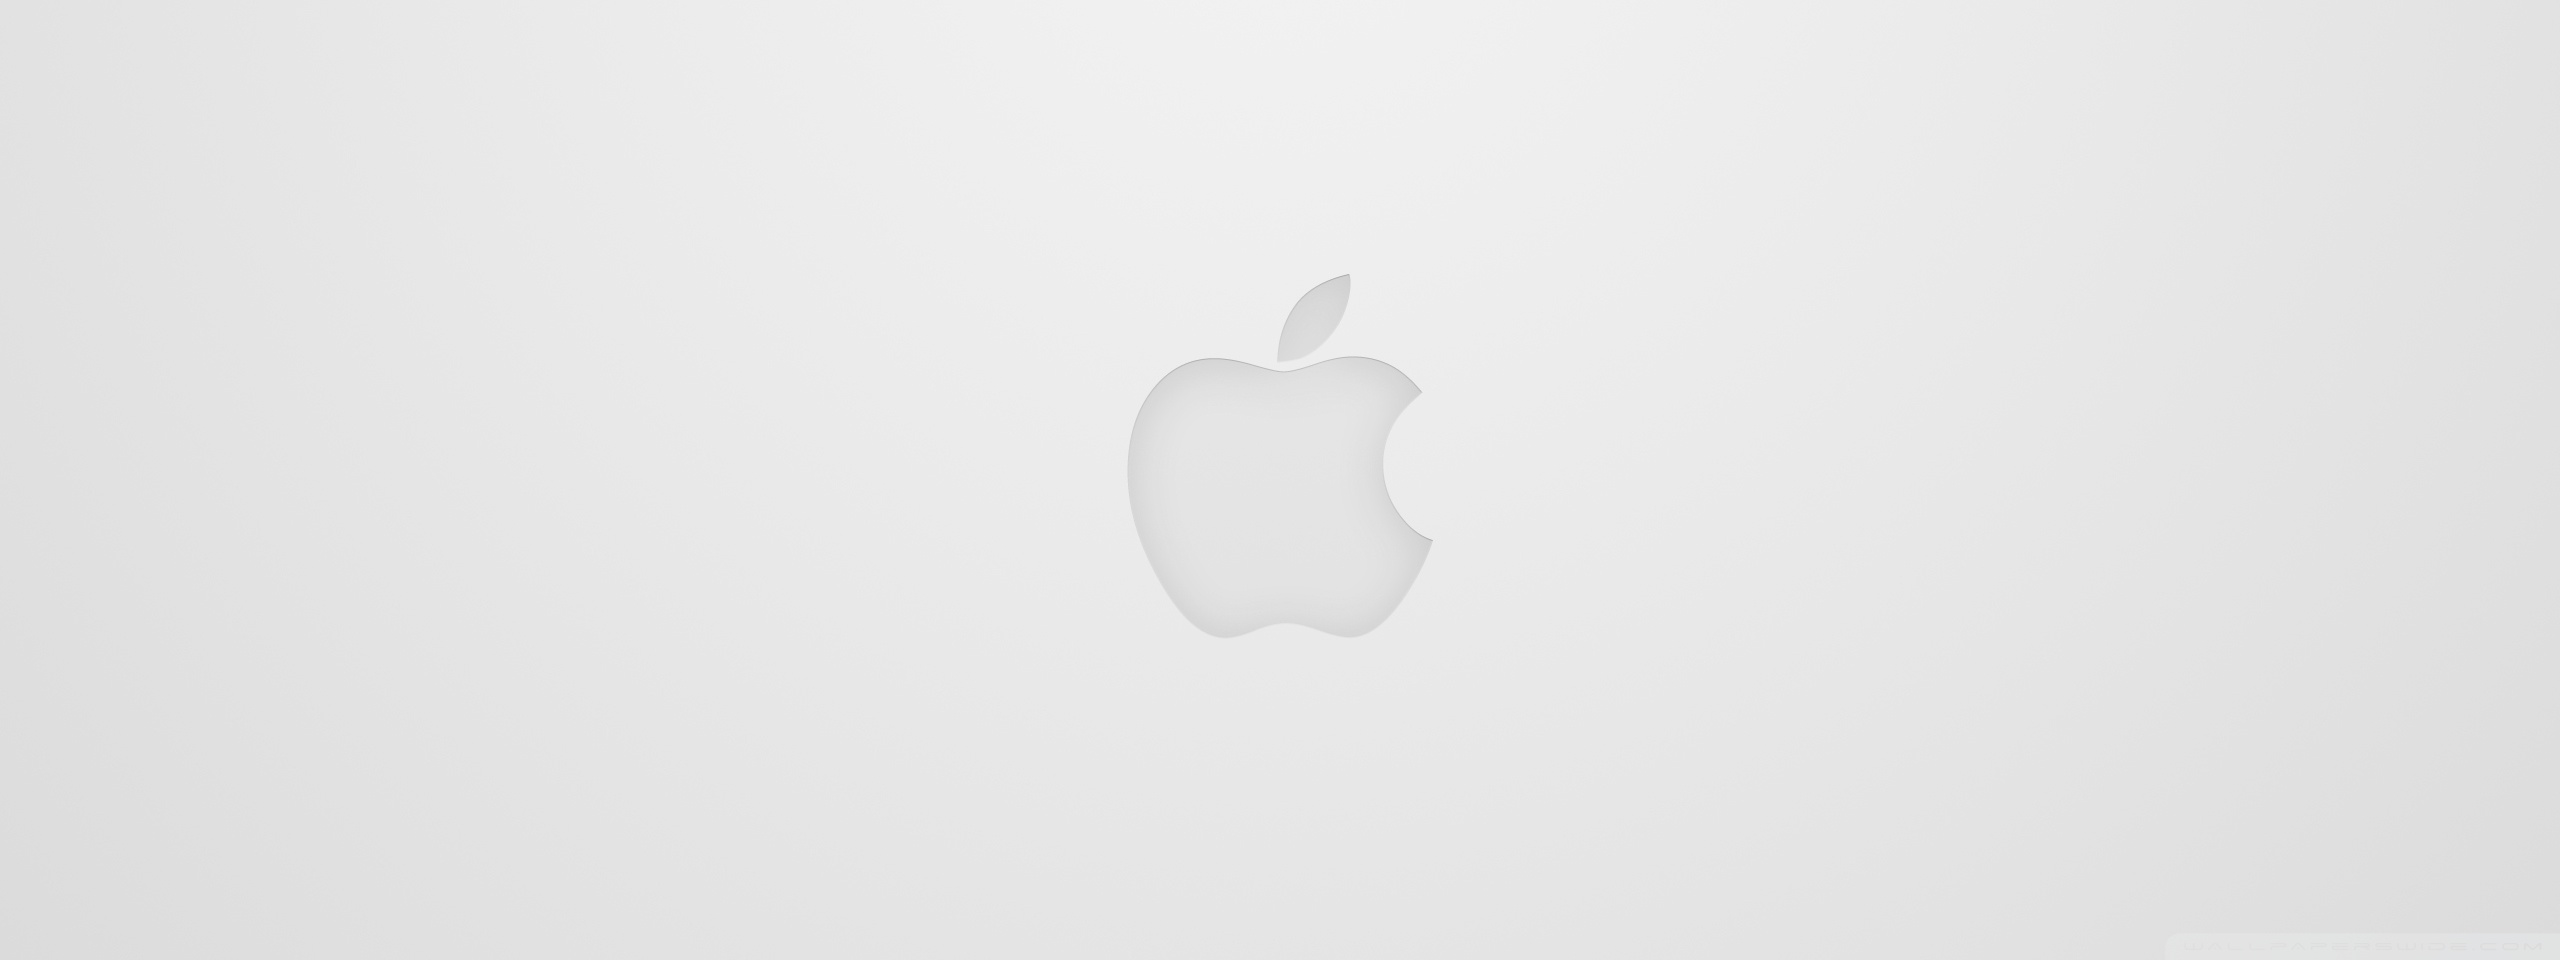 Apple Logo White Ultra HD Desktop Background Wallpaper for 4K UHD TV ...